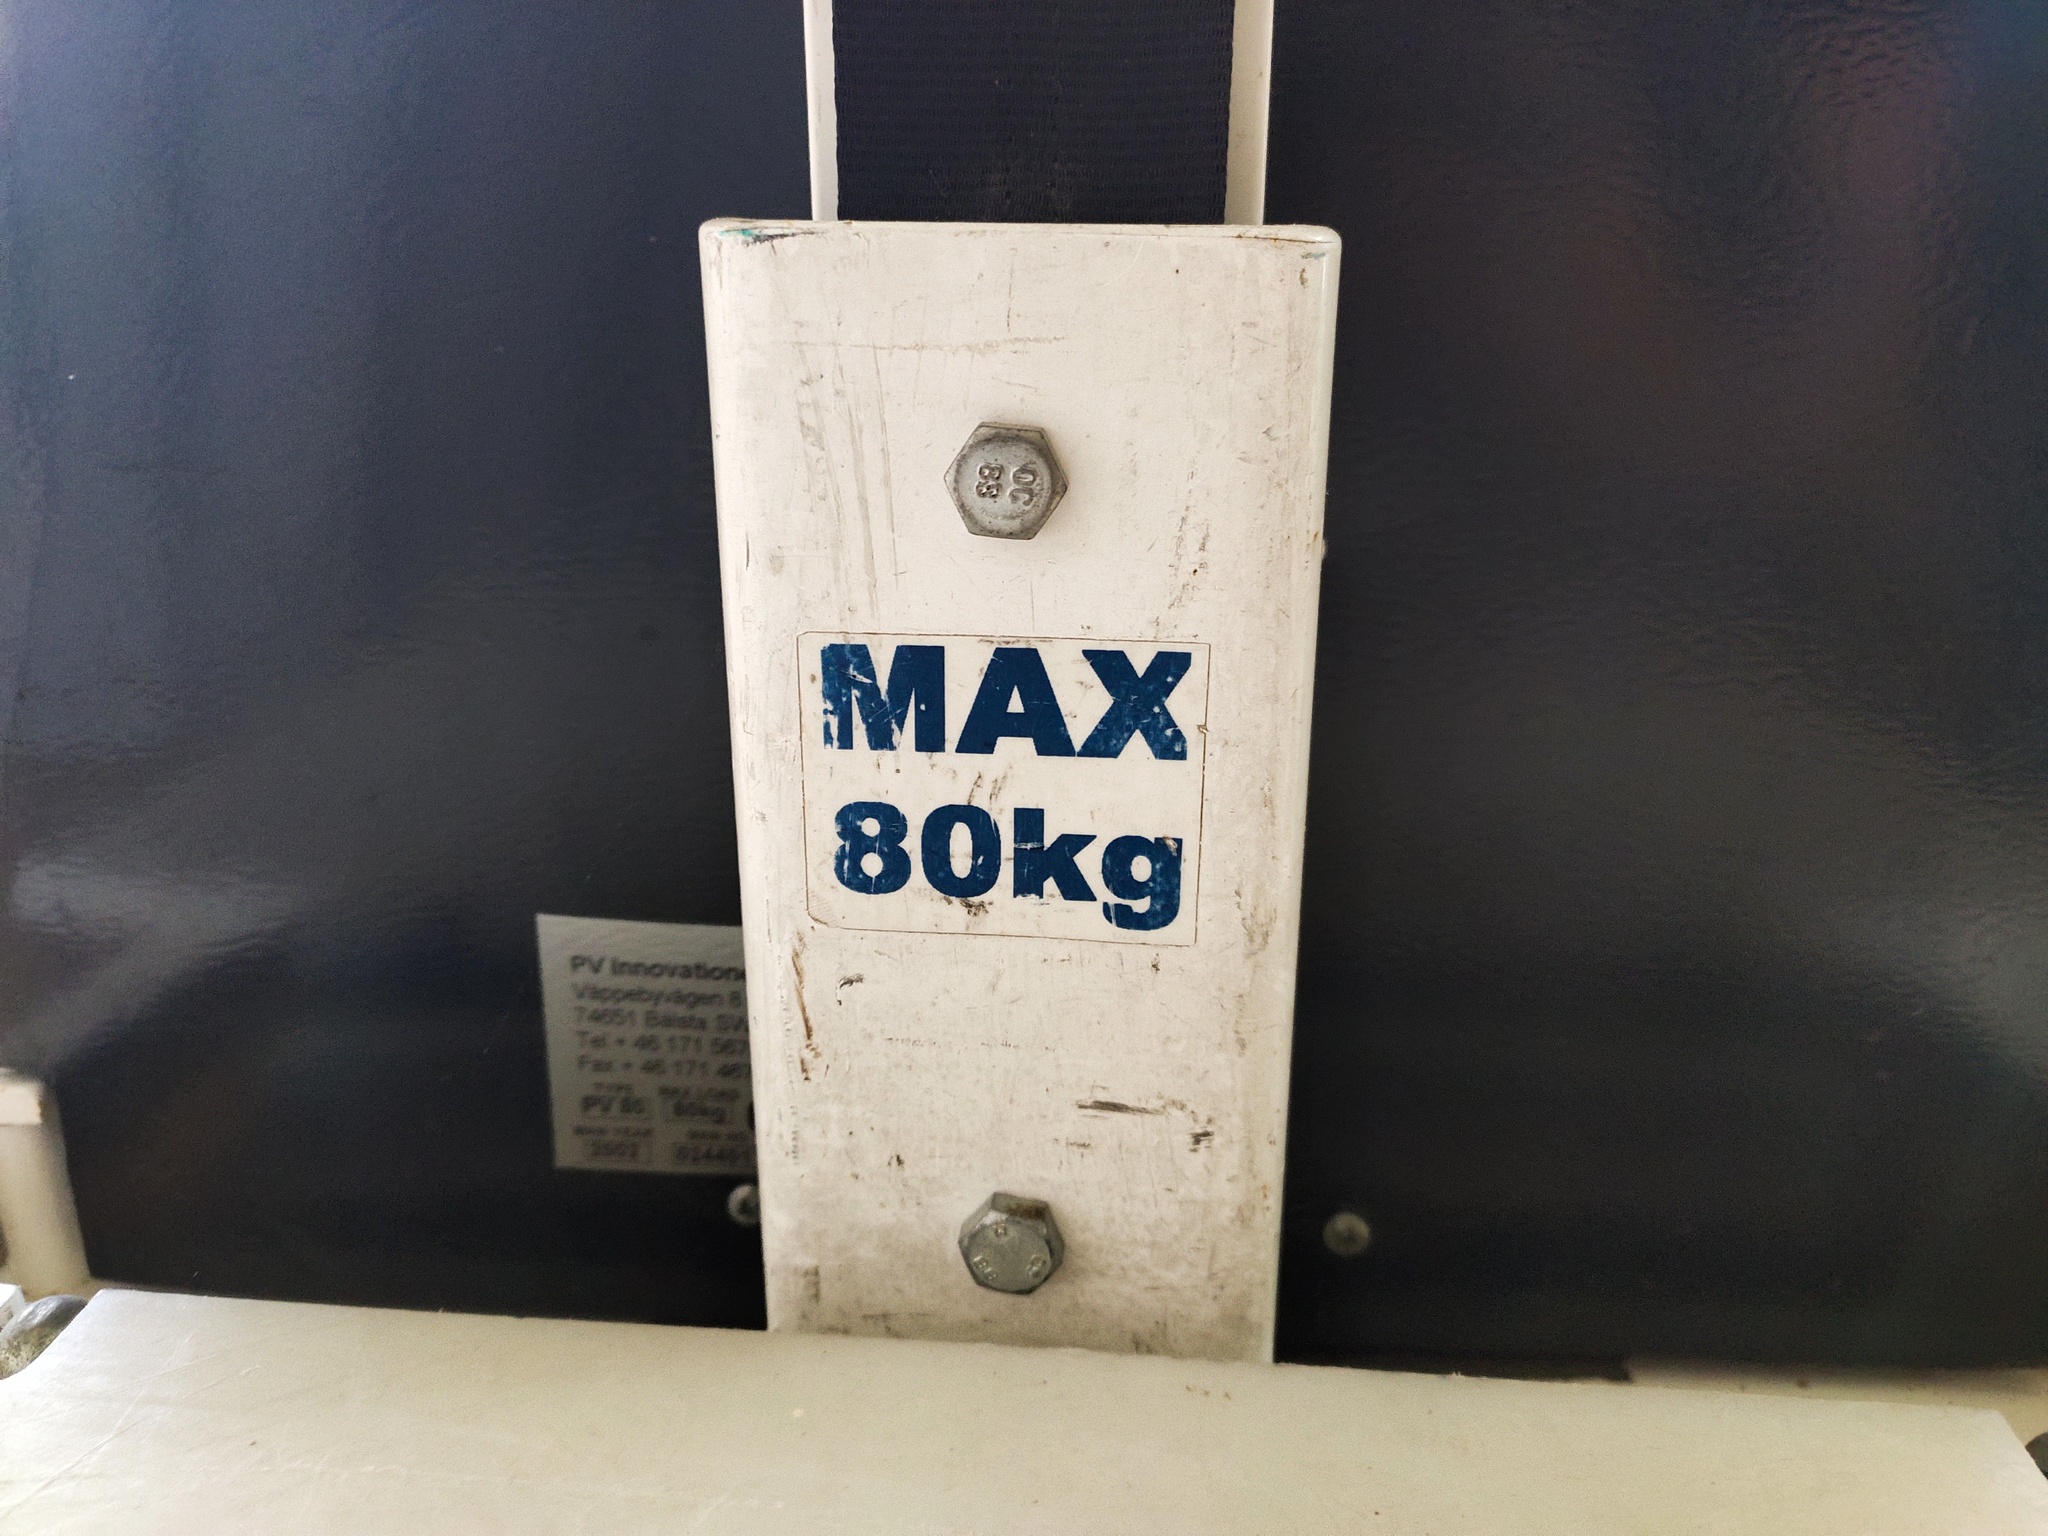 Elektrisk lyft, PV 80 från PV Innovationer AB - Max 80 kg